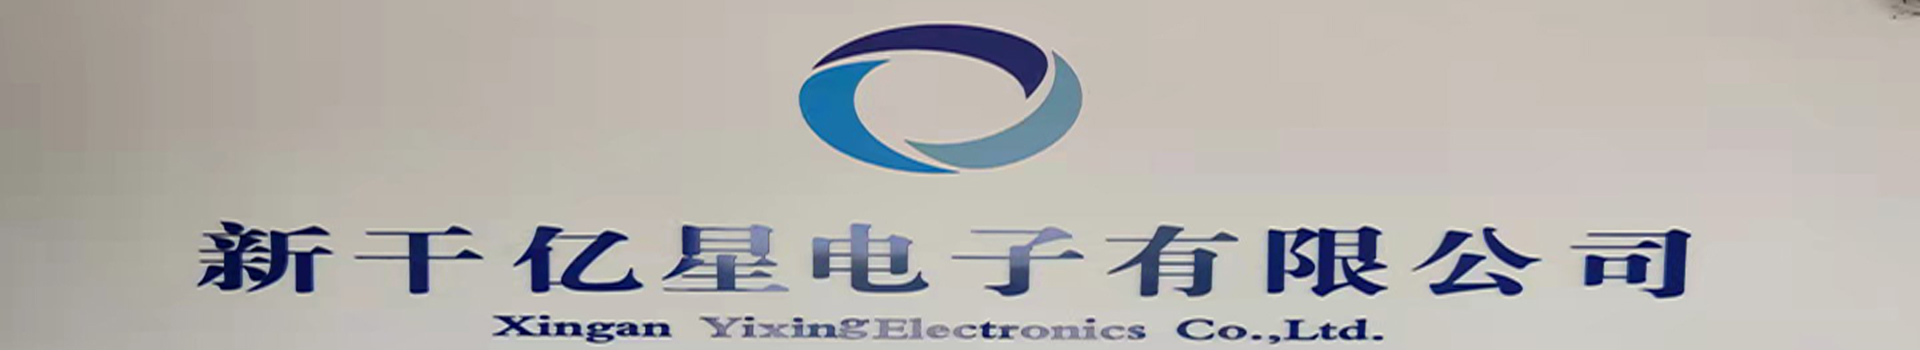 Xingan Xian Yixing Electronics Co., Ltd.